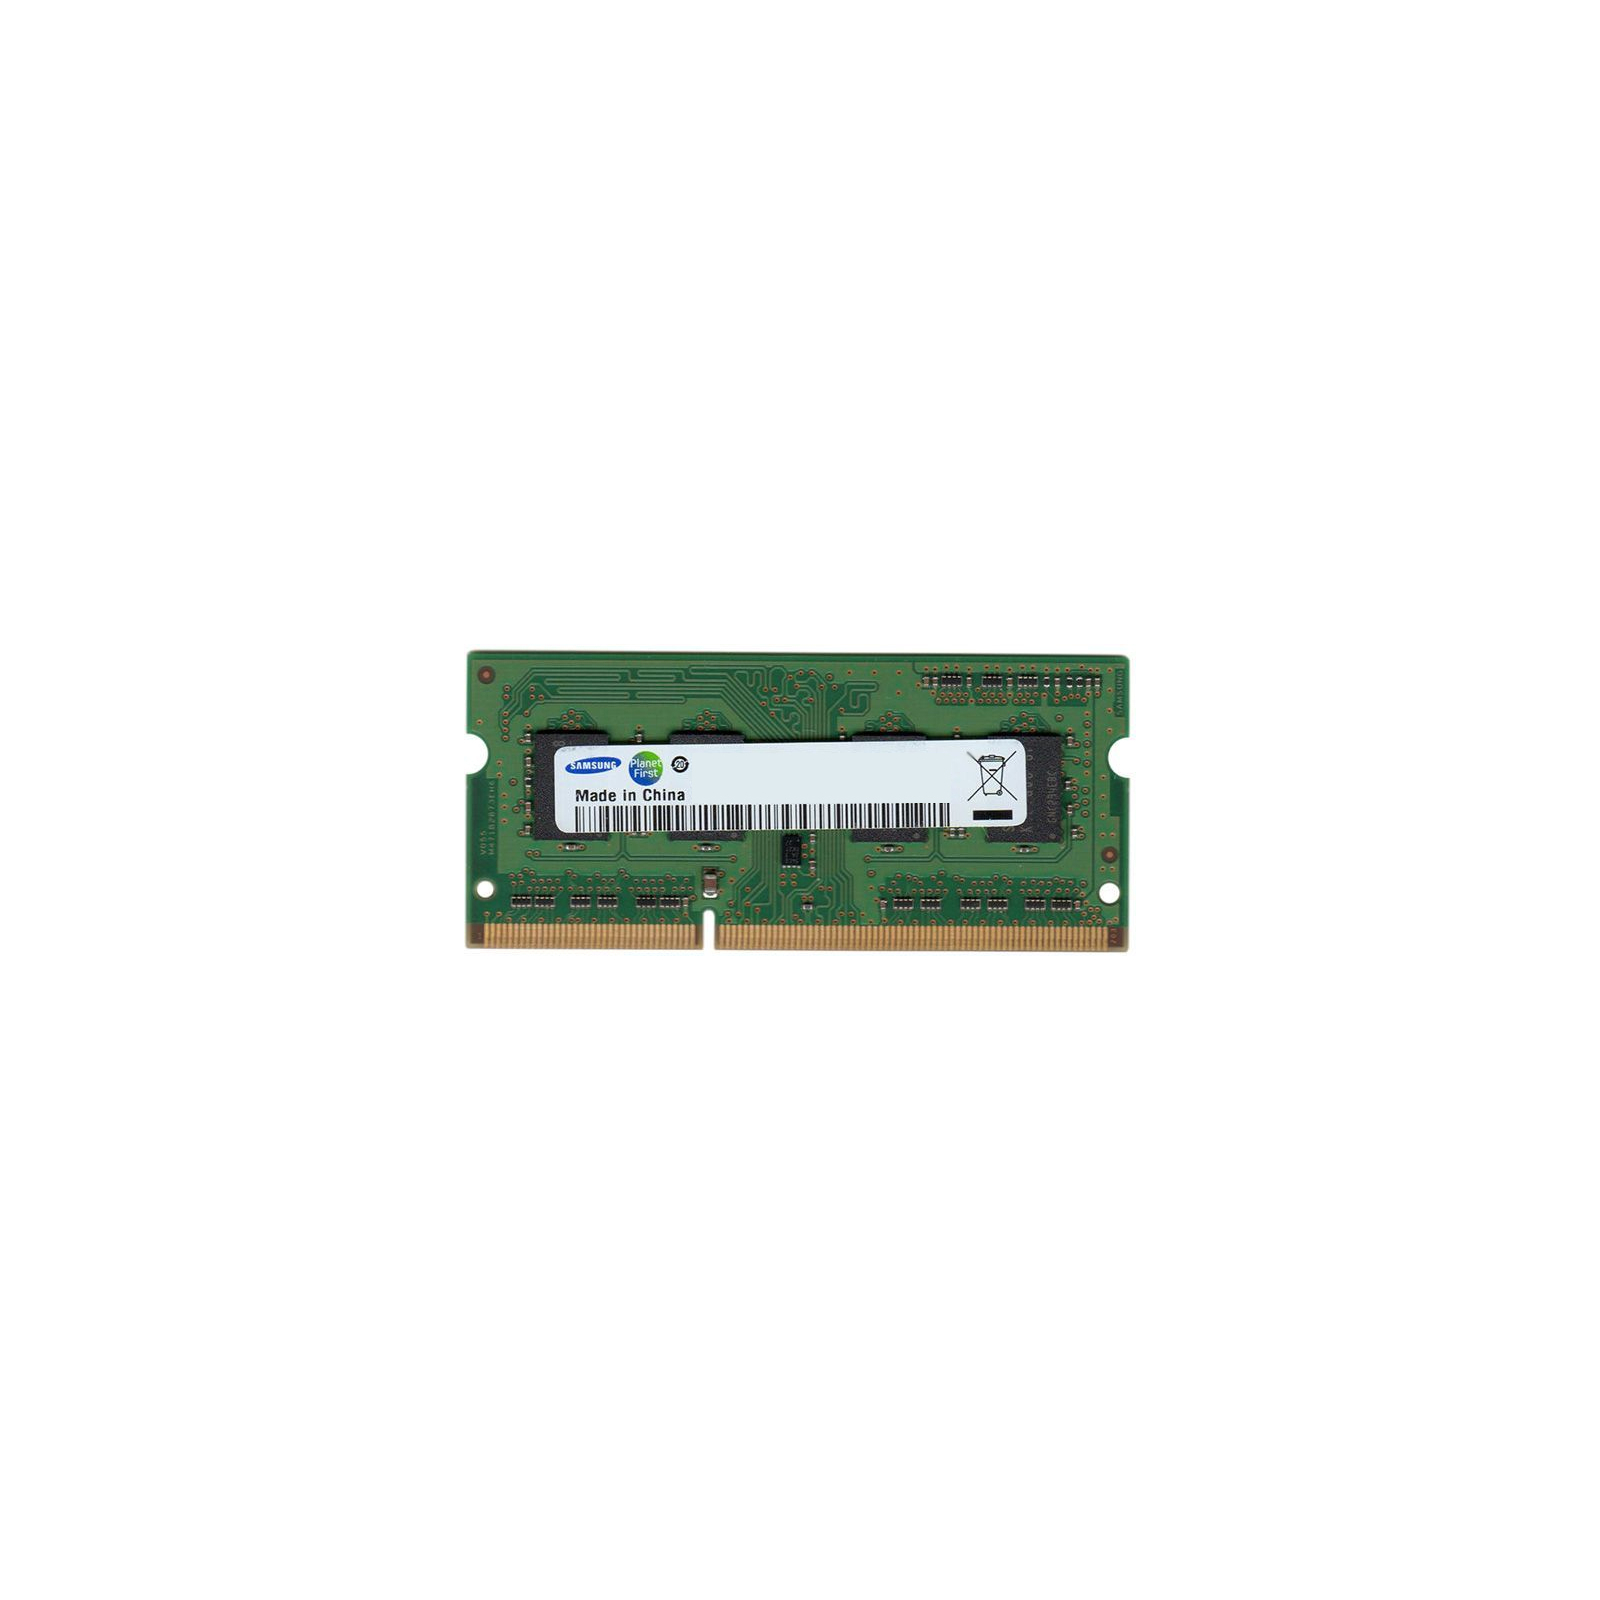 Модуль пам'яті для ноутбука SoDIMM DDR3 4GB 1600MHz Samsung (M471B5173DB0-YK0)